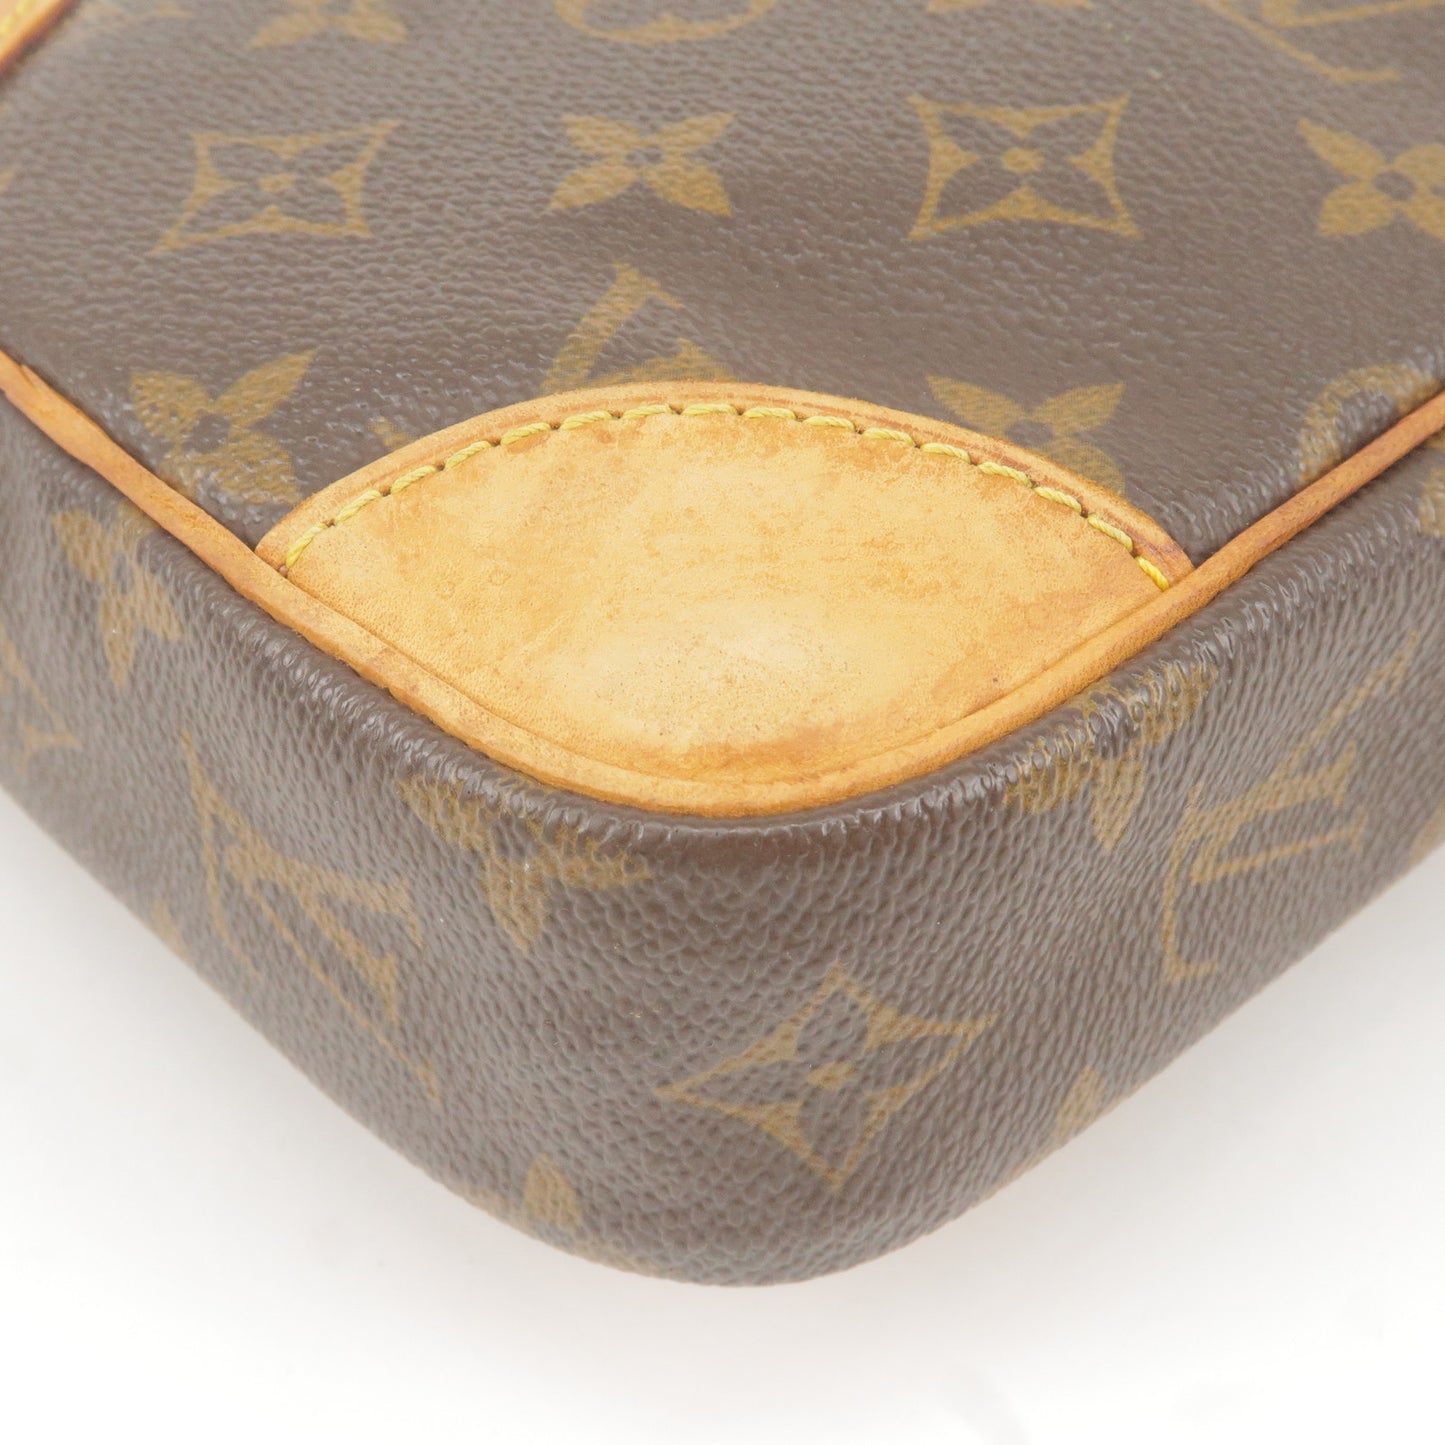 3zb1646] Auth Louis Vuitton Shoulder Bag Monogram Danube M45266